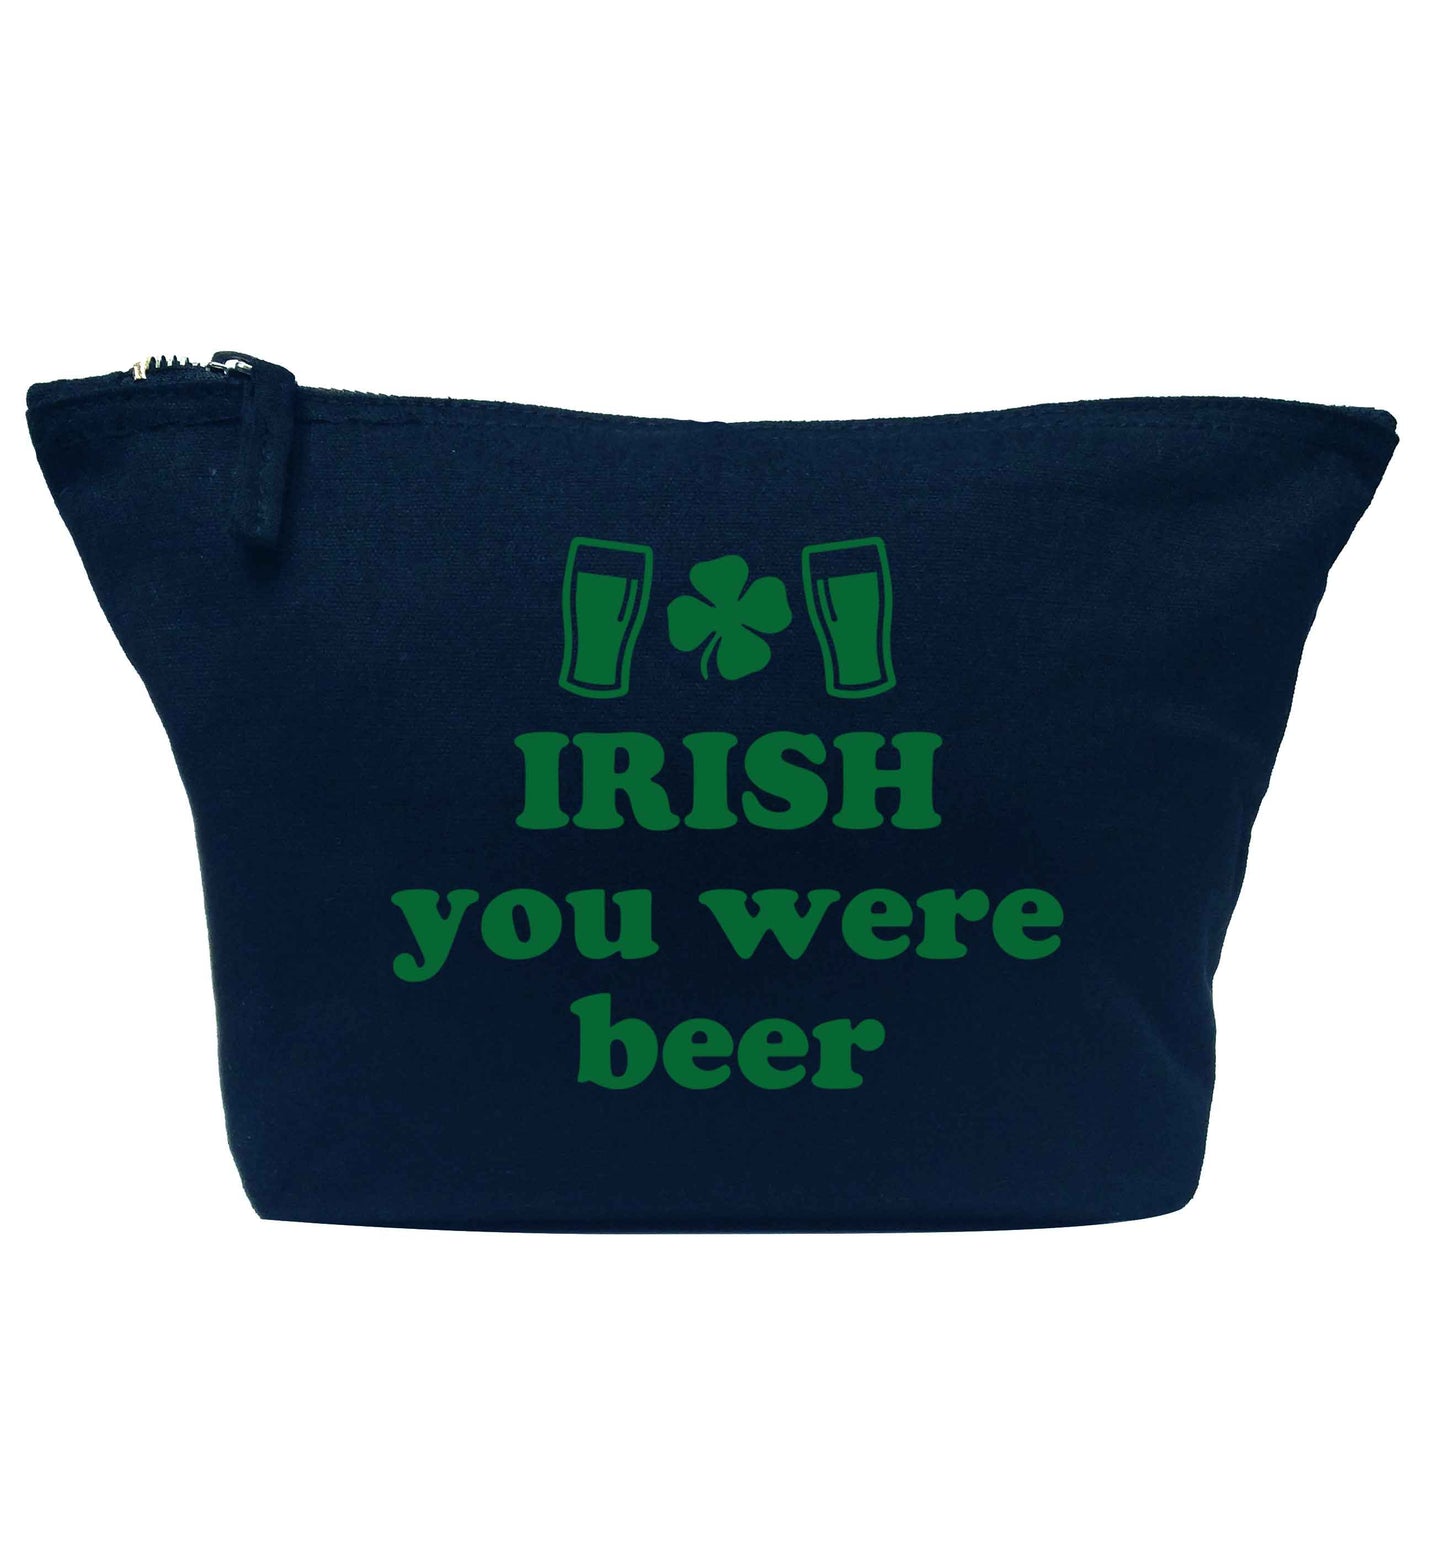 Irish you were beer navy makeup bag